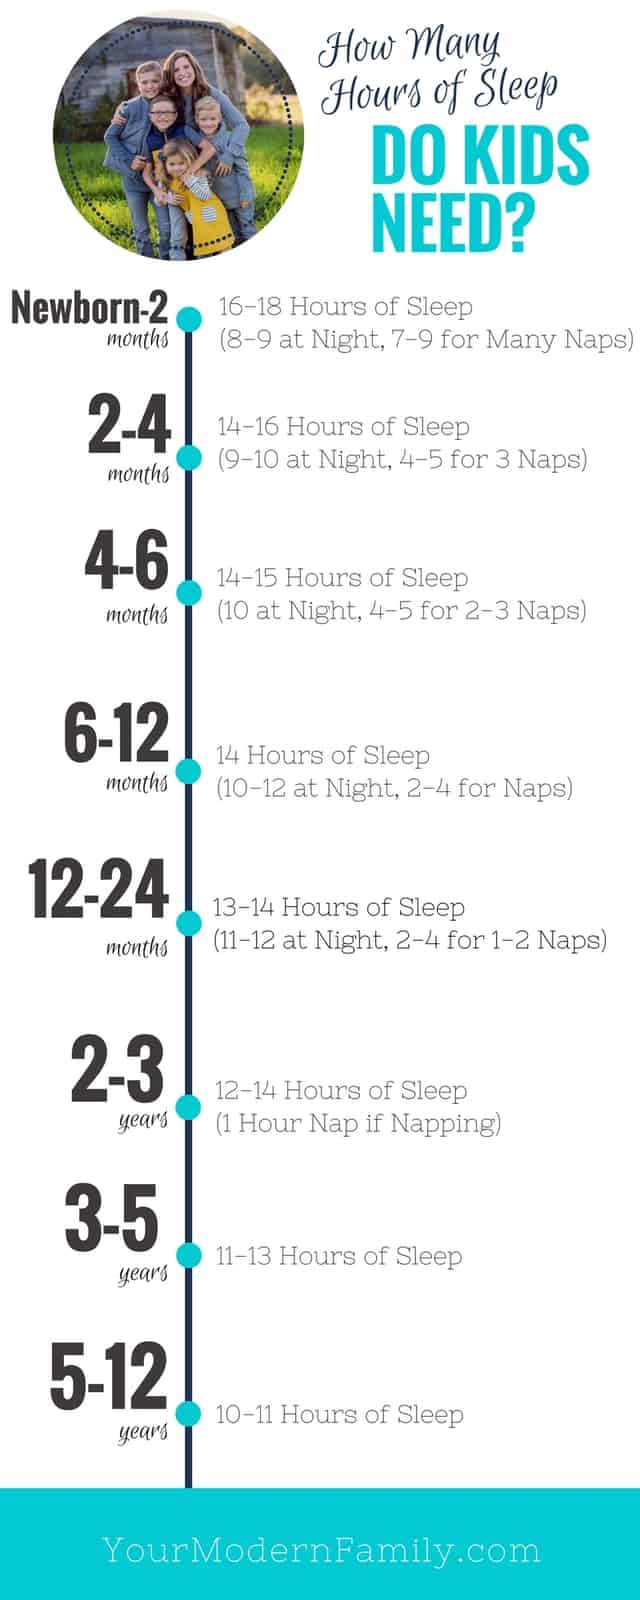 how many hours of sleep do kids need? 